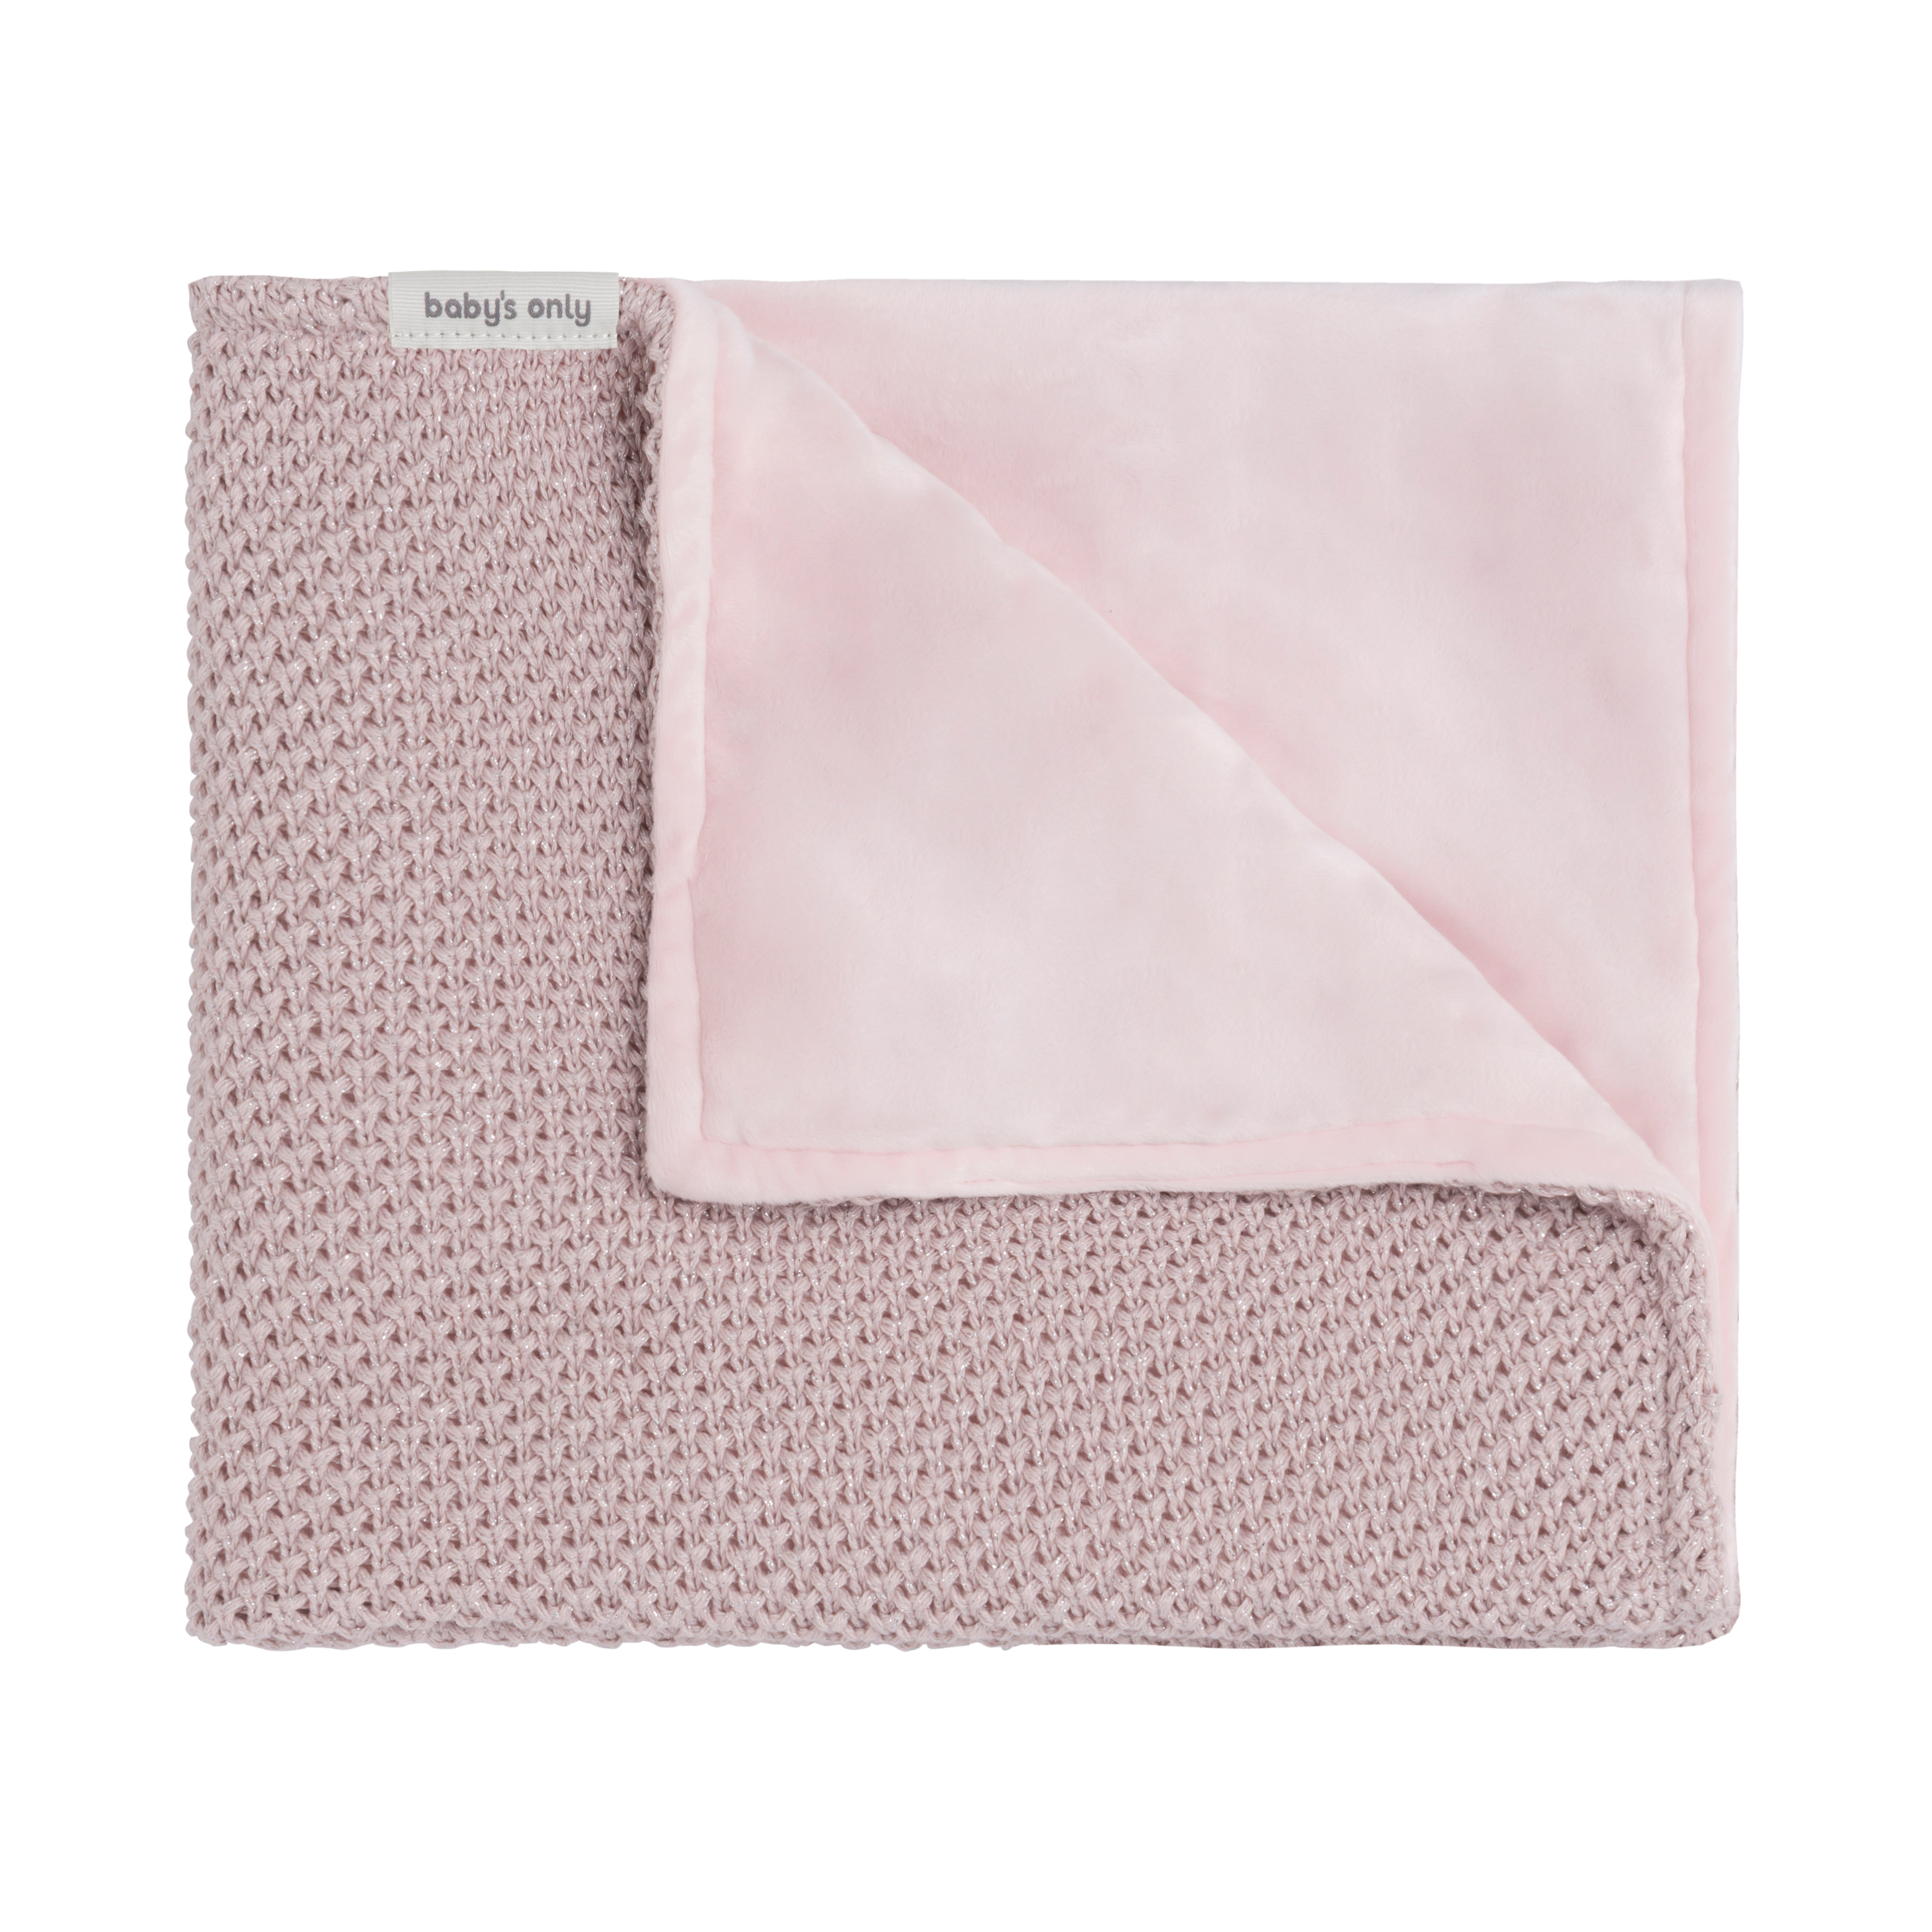 Cot blanket soft Sparkle-Flavor silver-pink melee